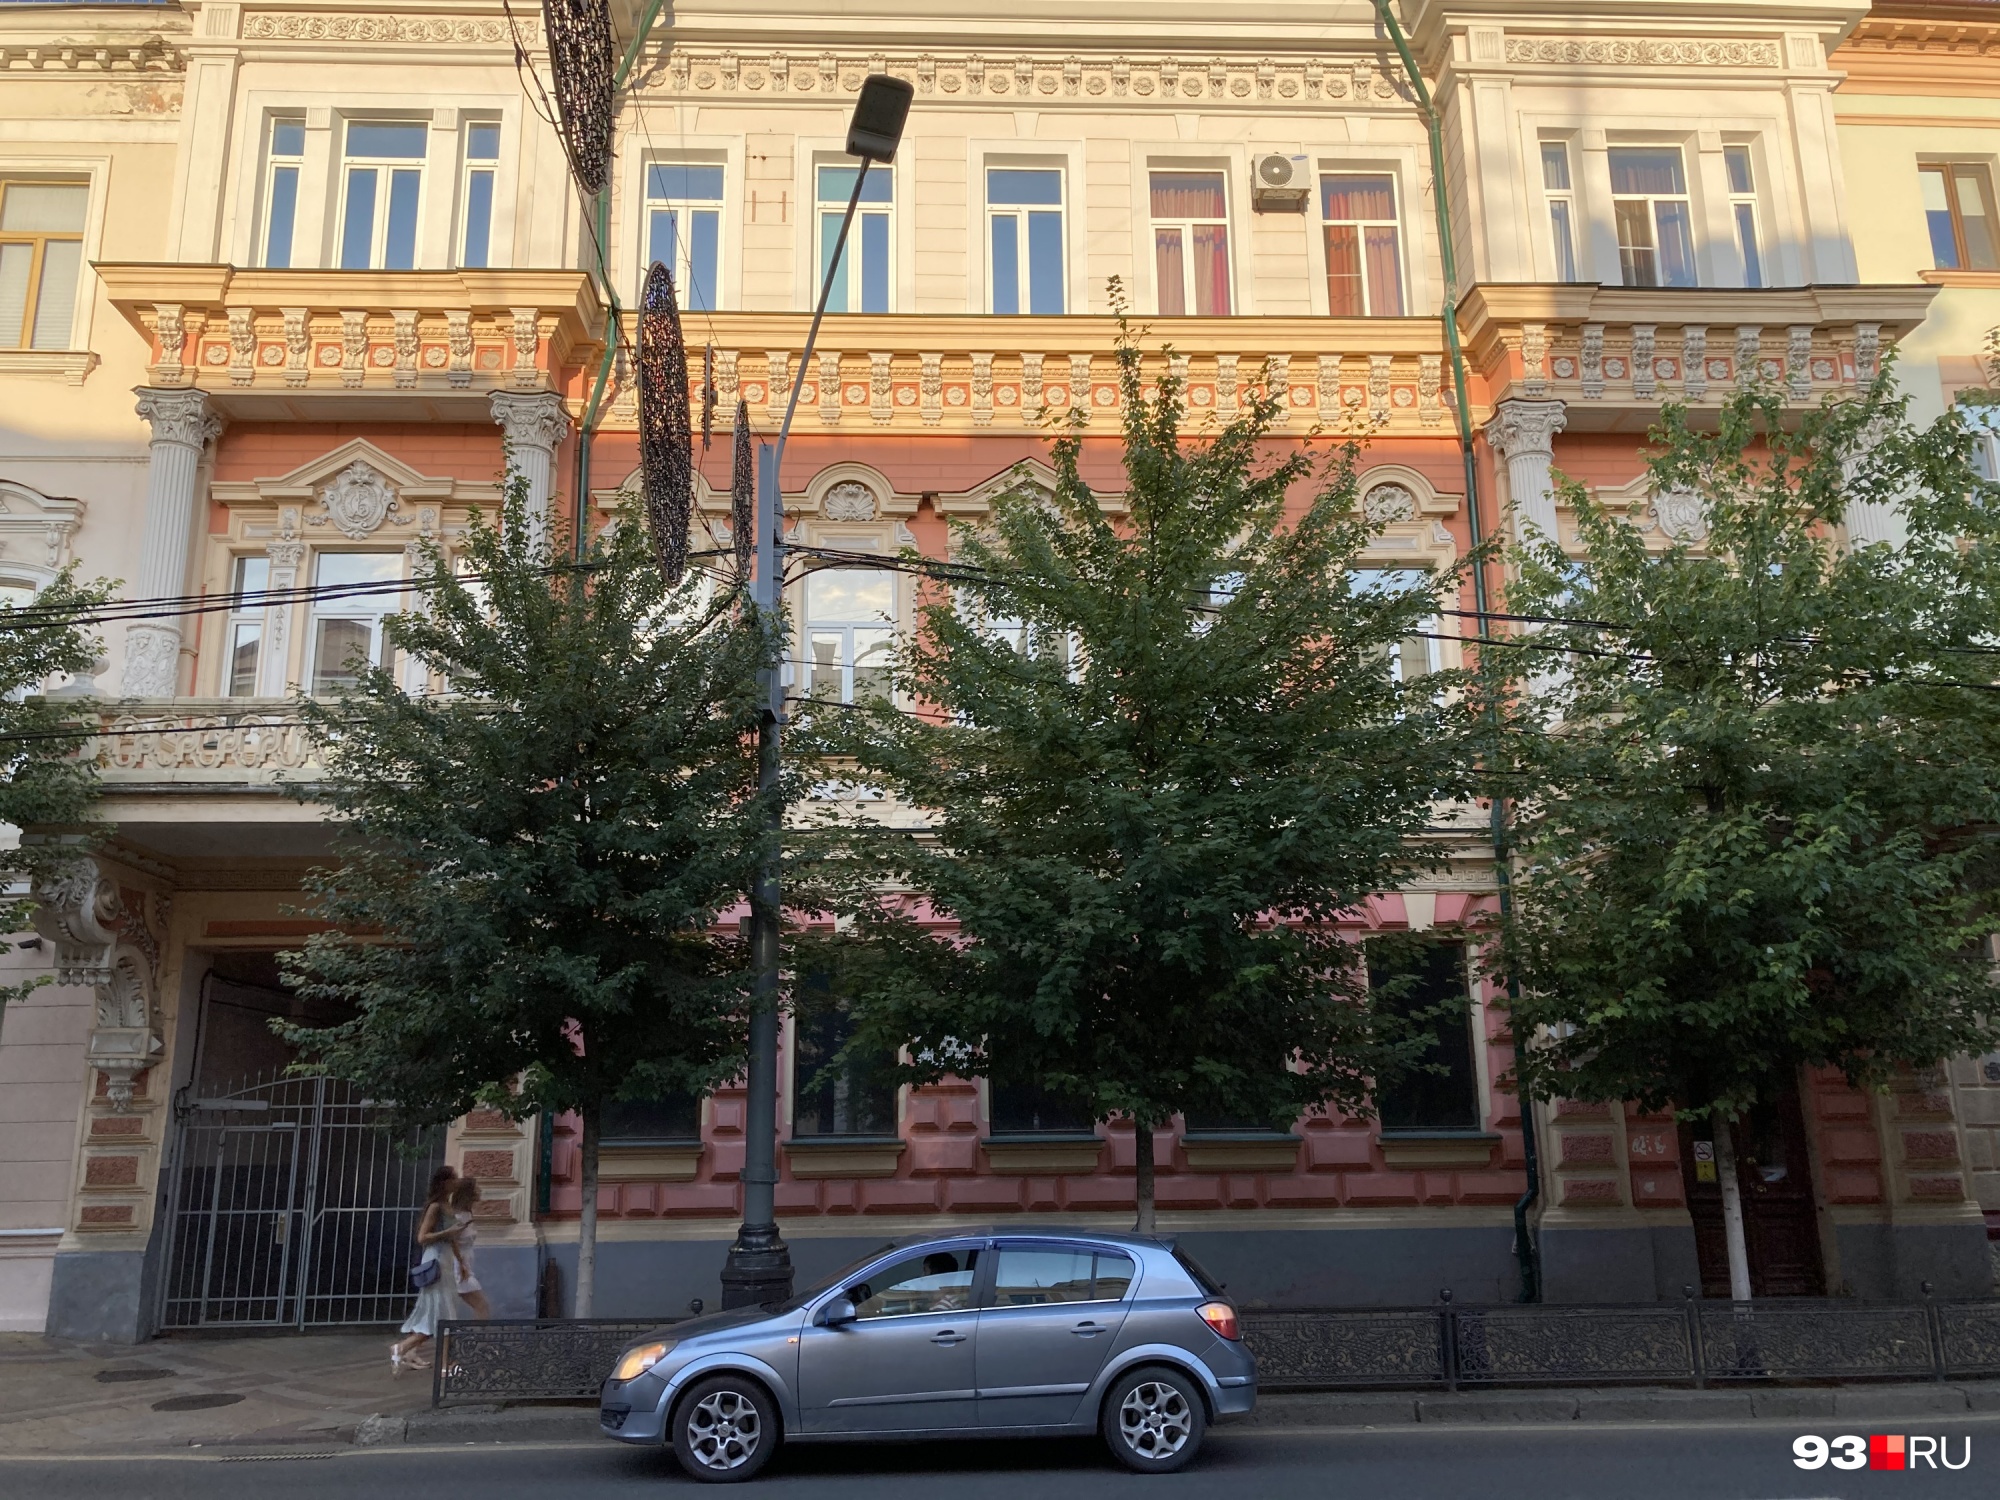 Здание, известное как дом со львами, находится в начале улицы Красной